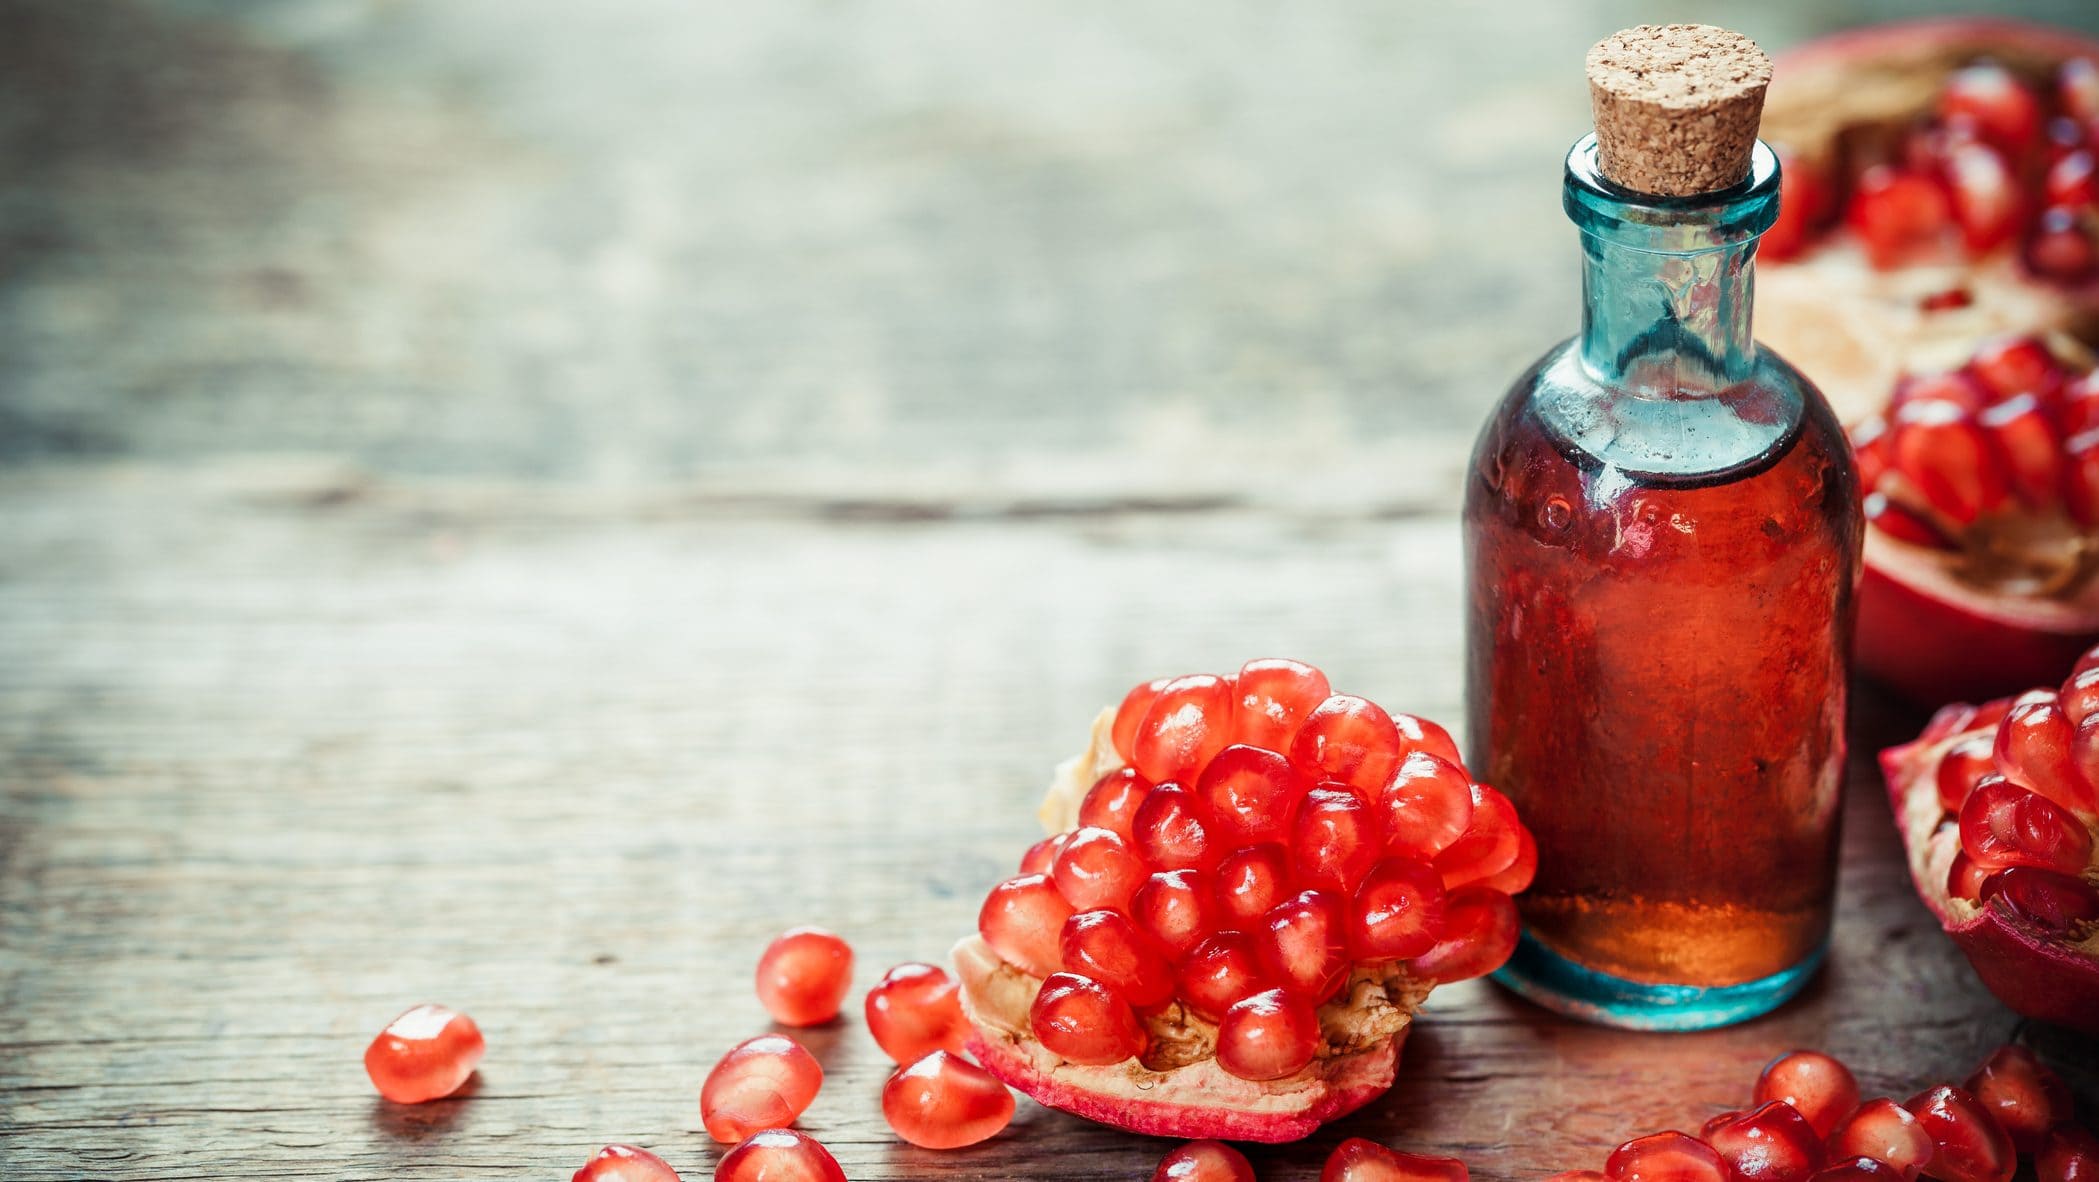 In einer Glasflasche ist eine rote Flüssigkeit. Es handelt sich um Granatapfel-Sirup. Daneben liegen Granatapfelkerne.